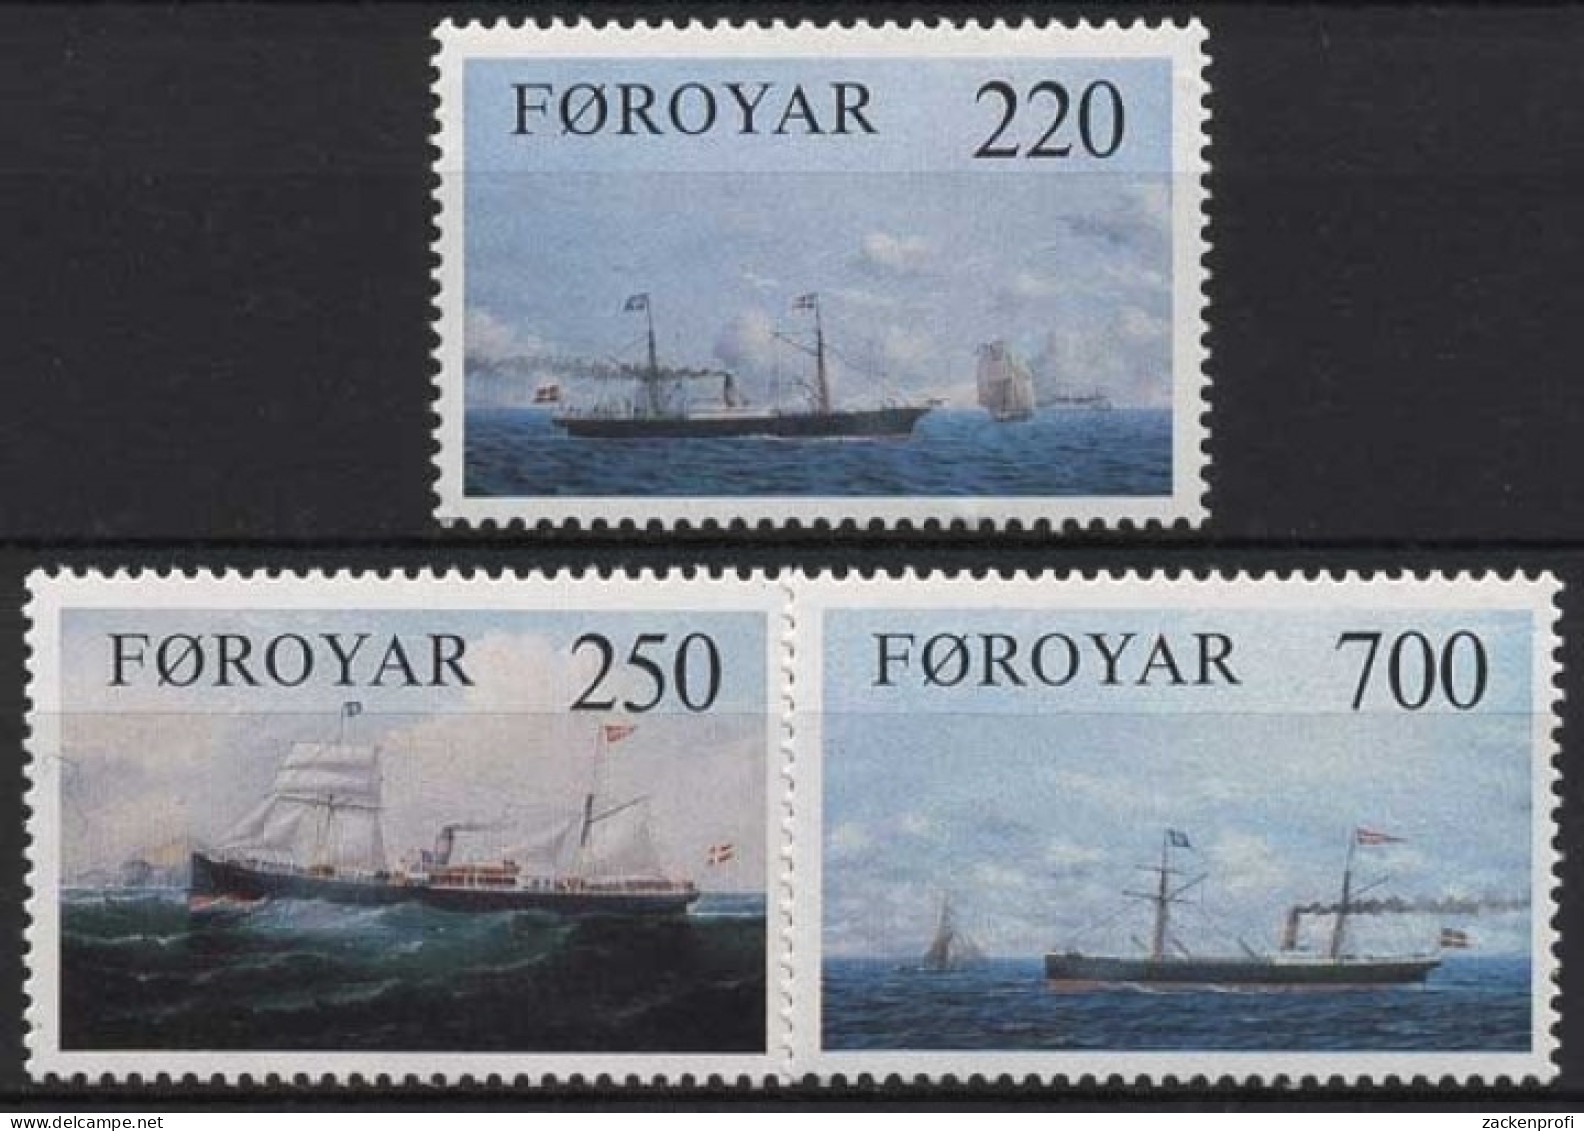 Färöer 1983 Dampfschiffe 79/81 Postfrisch - Färöer Inseln